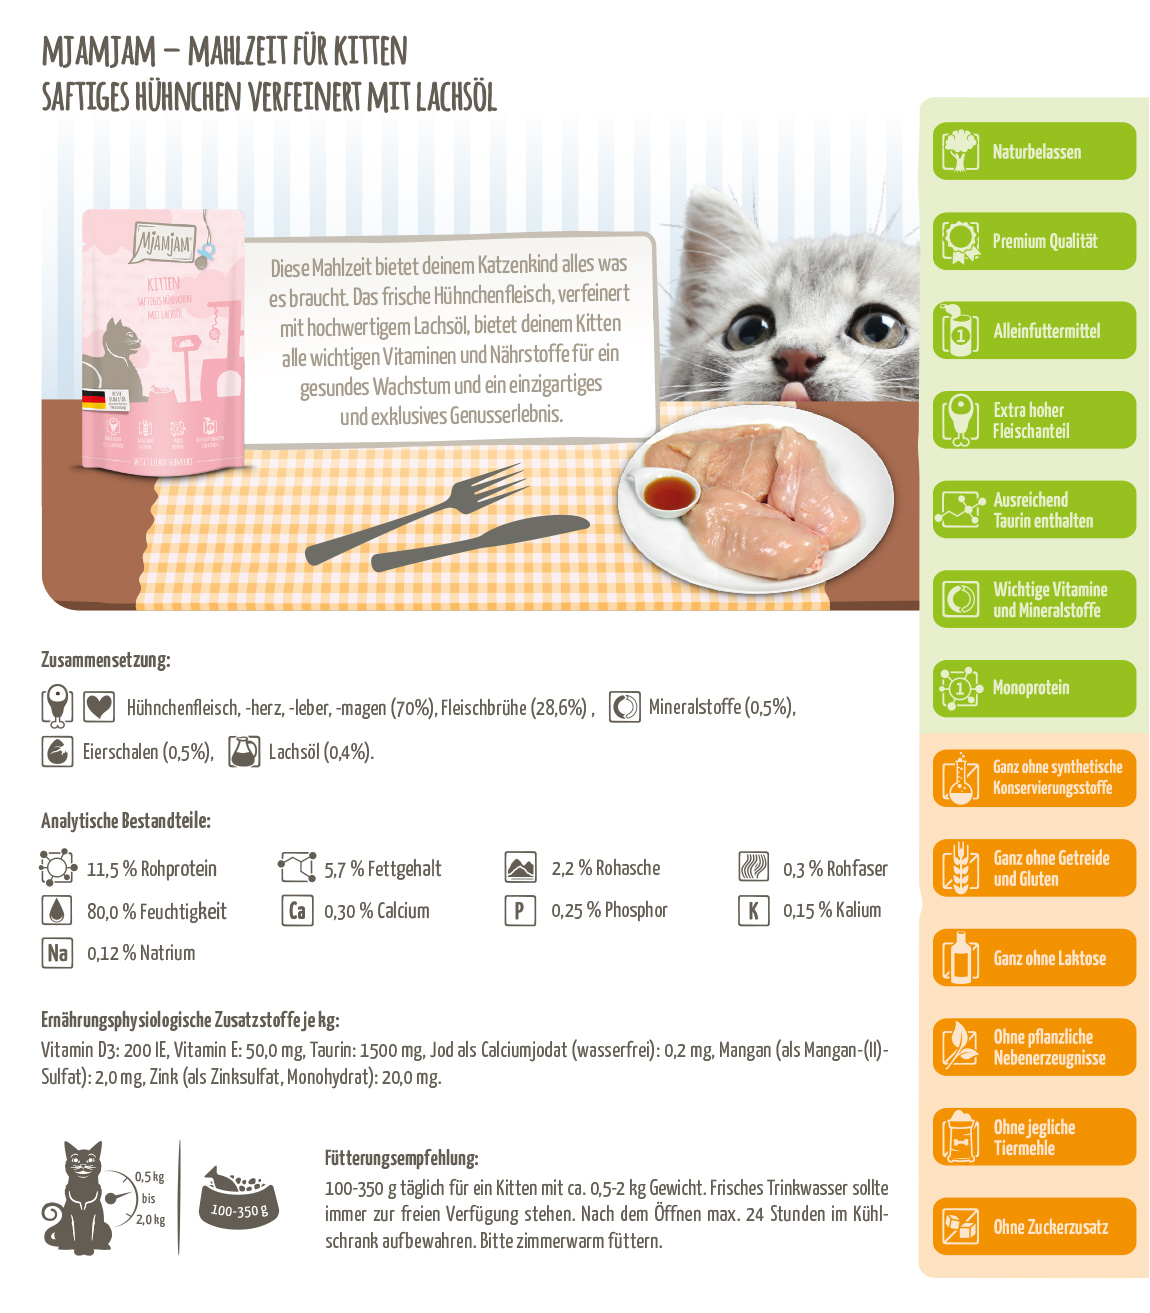 Produktbeschreibung-WEB-Kitten-Pouch-Saftiges-Huhn-verfeinert-mit-LachsoeloQnRSx91RFkb2